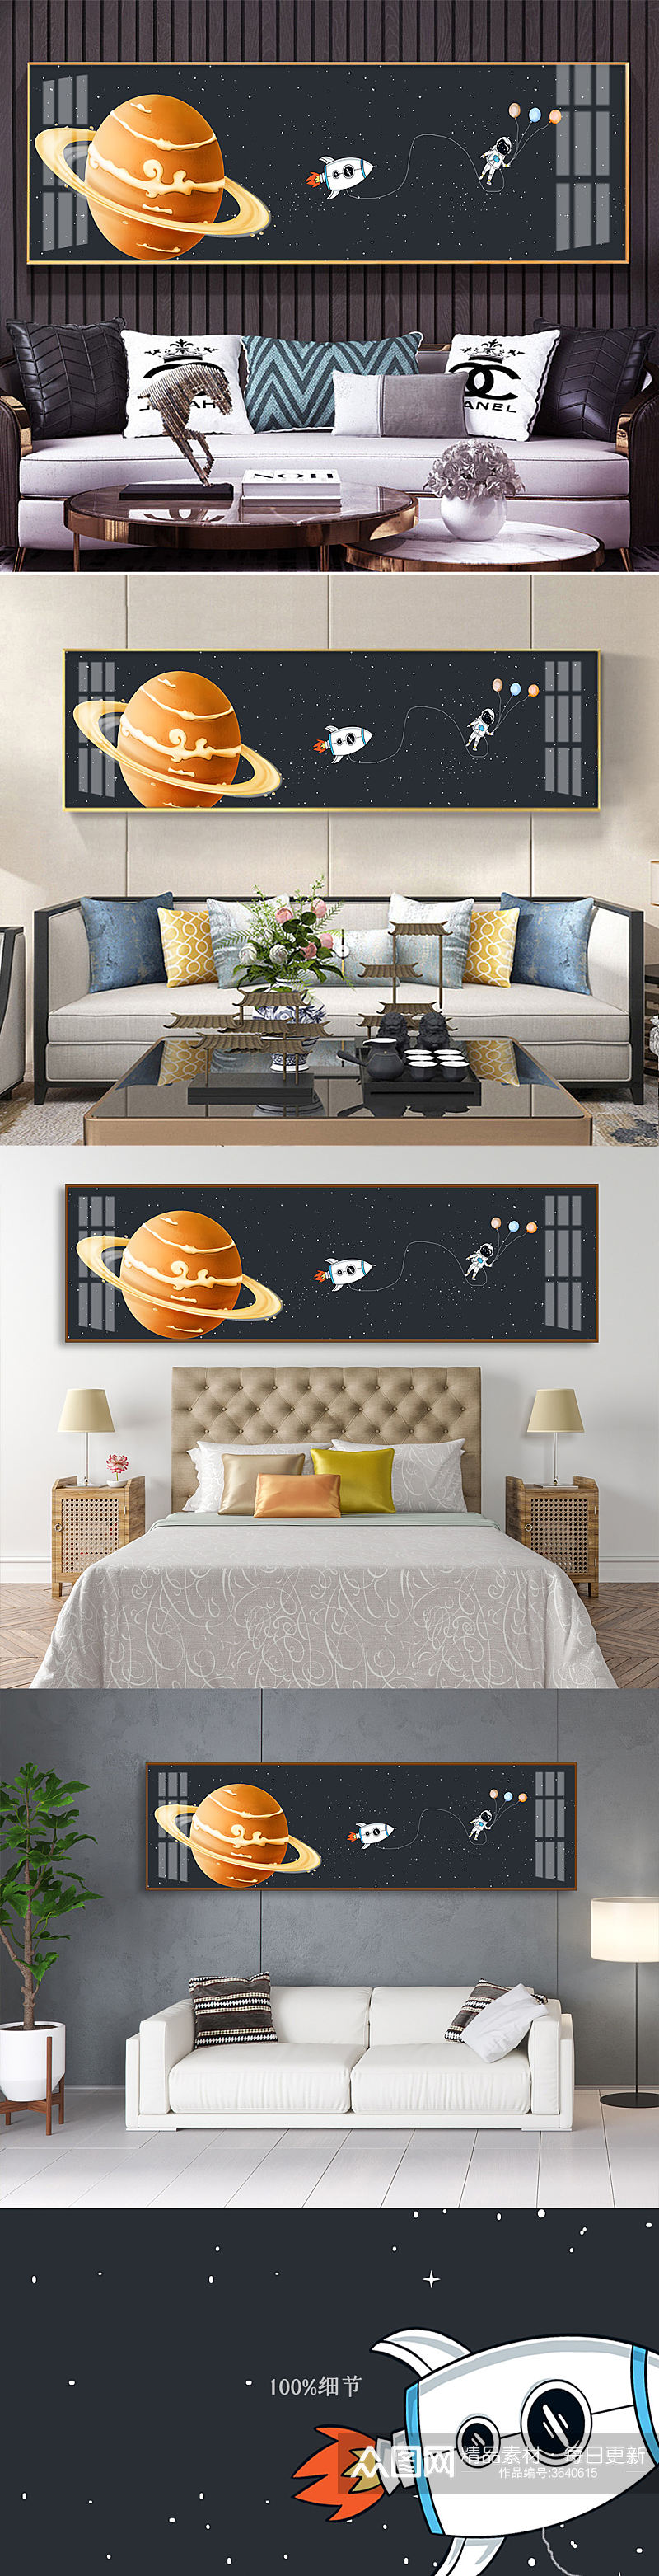 儿童房宇航员太空装饰画素材